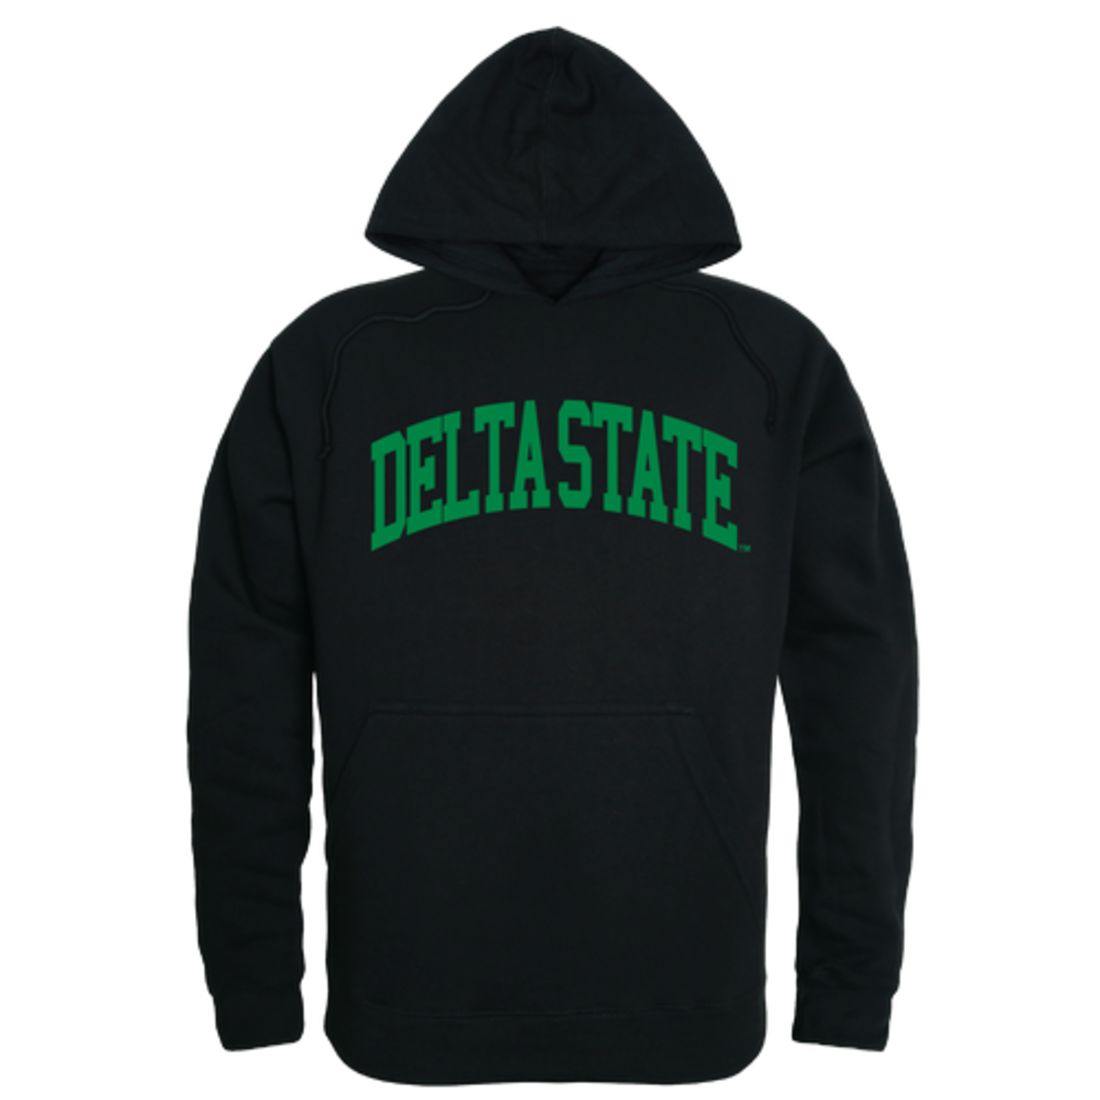 DSU Delta State University Statesmen College Hoodie Sweatshirt Black-Campus-Wardrobe